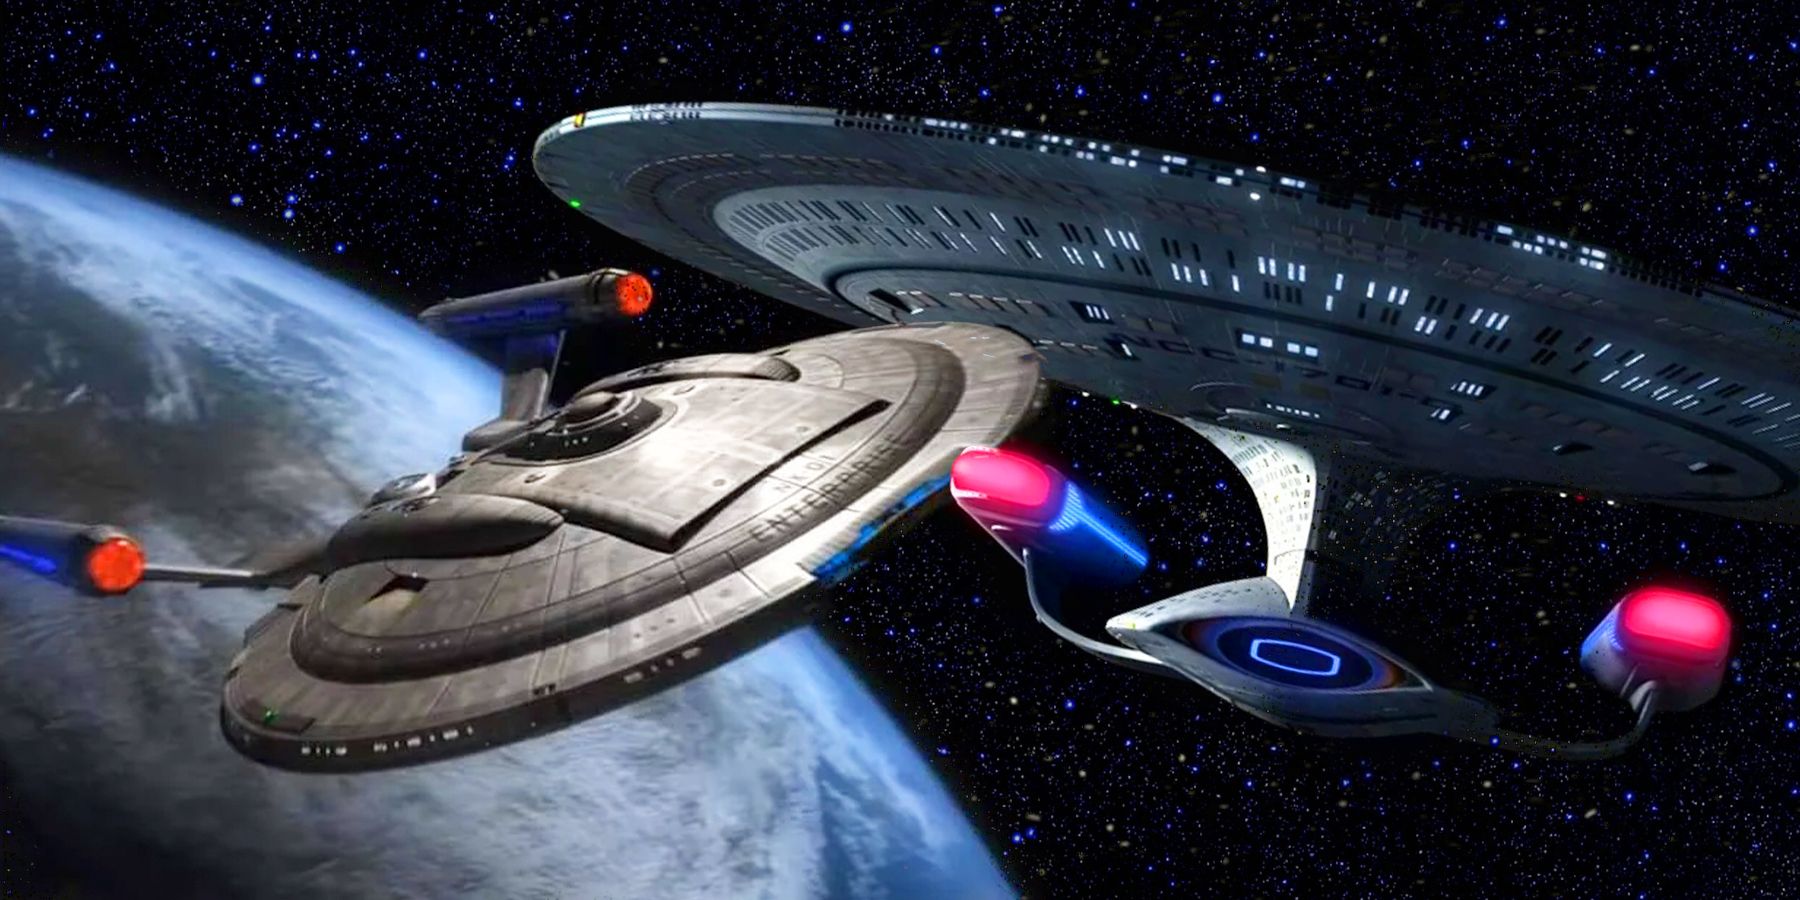 enterprise star trek ship number